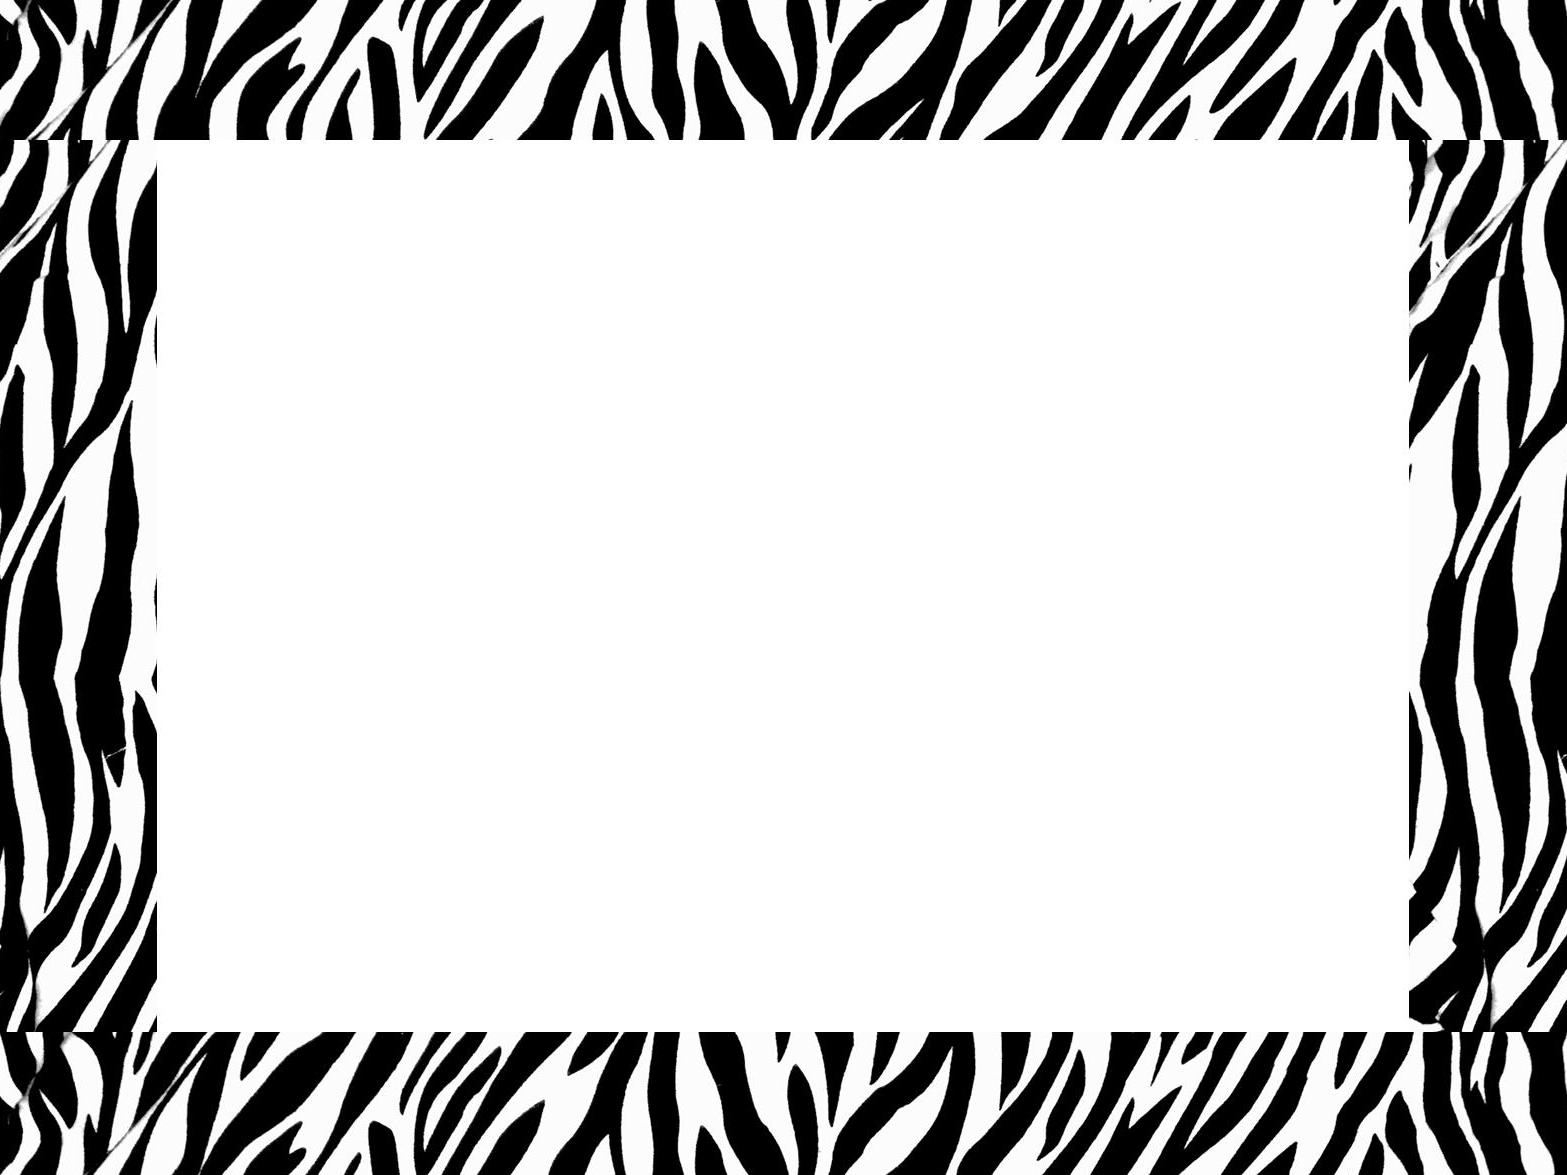 Zebra border clipart 